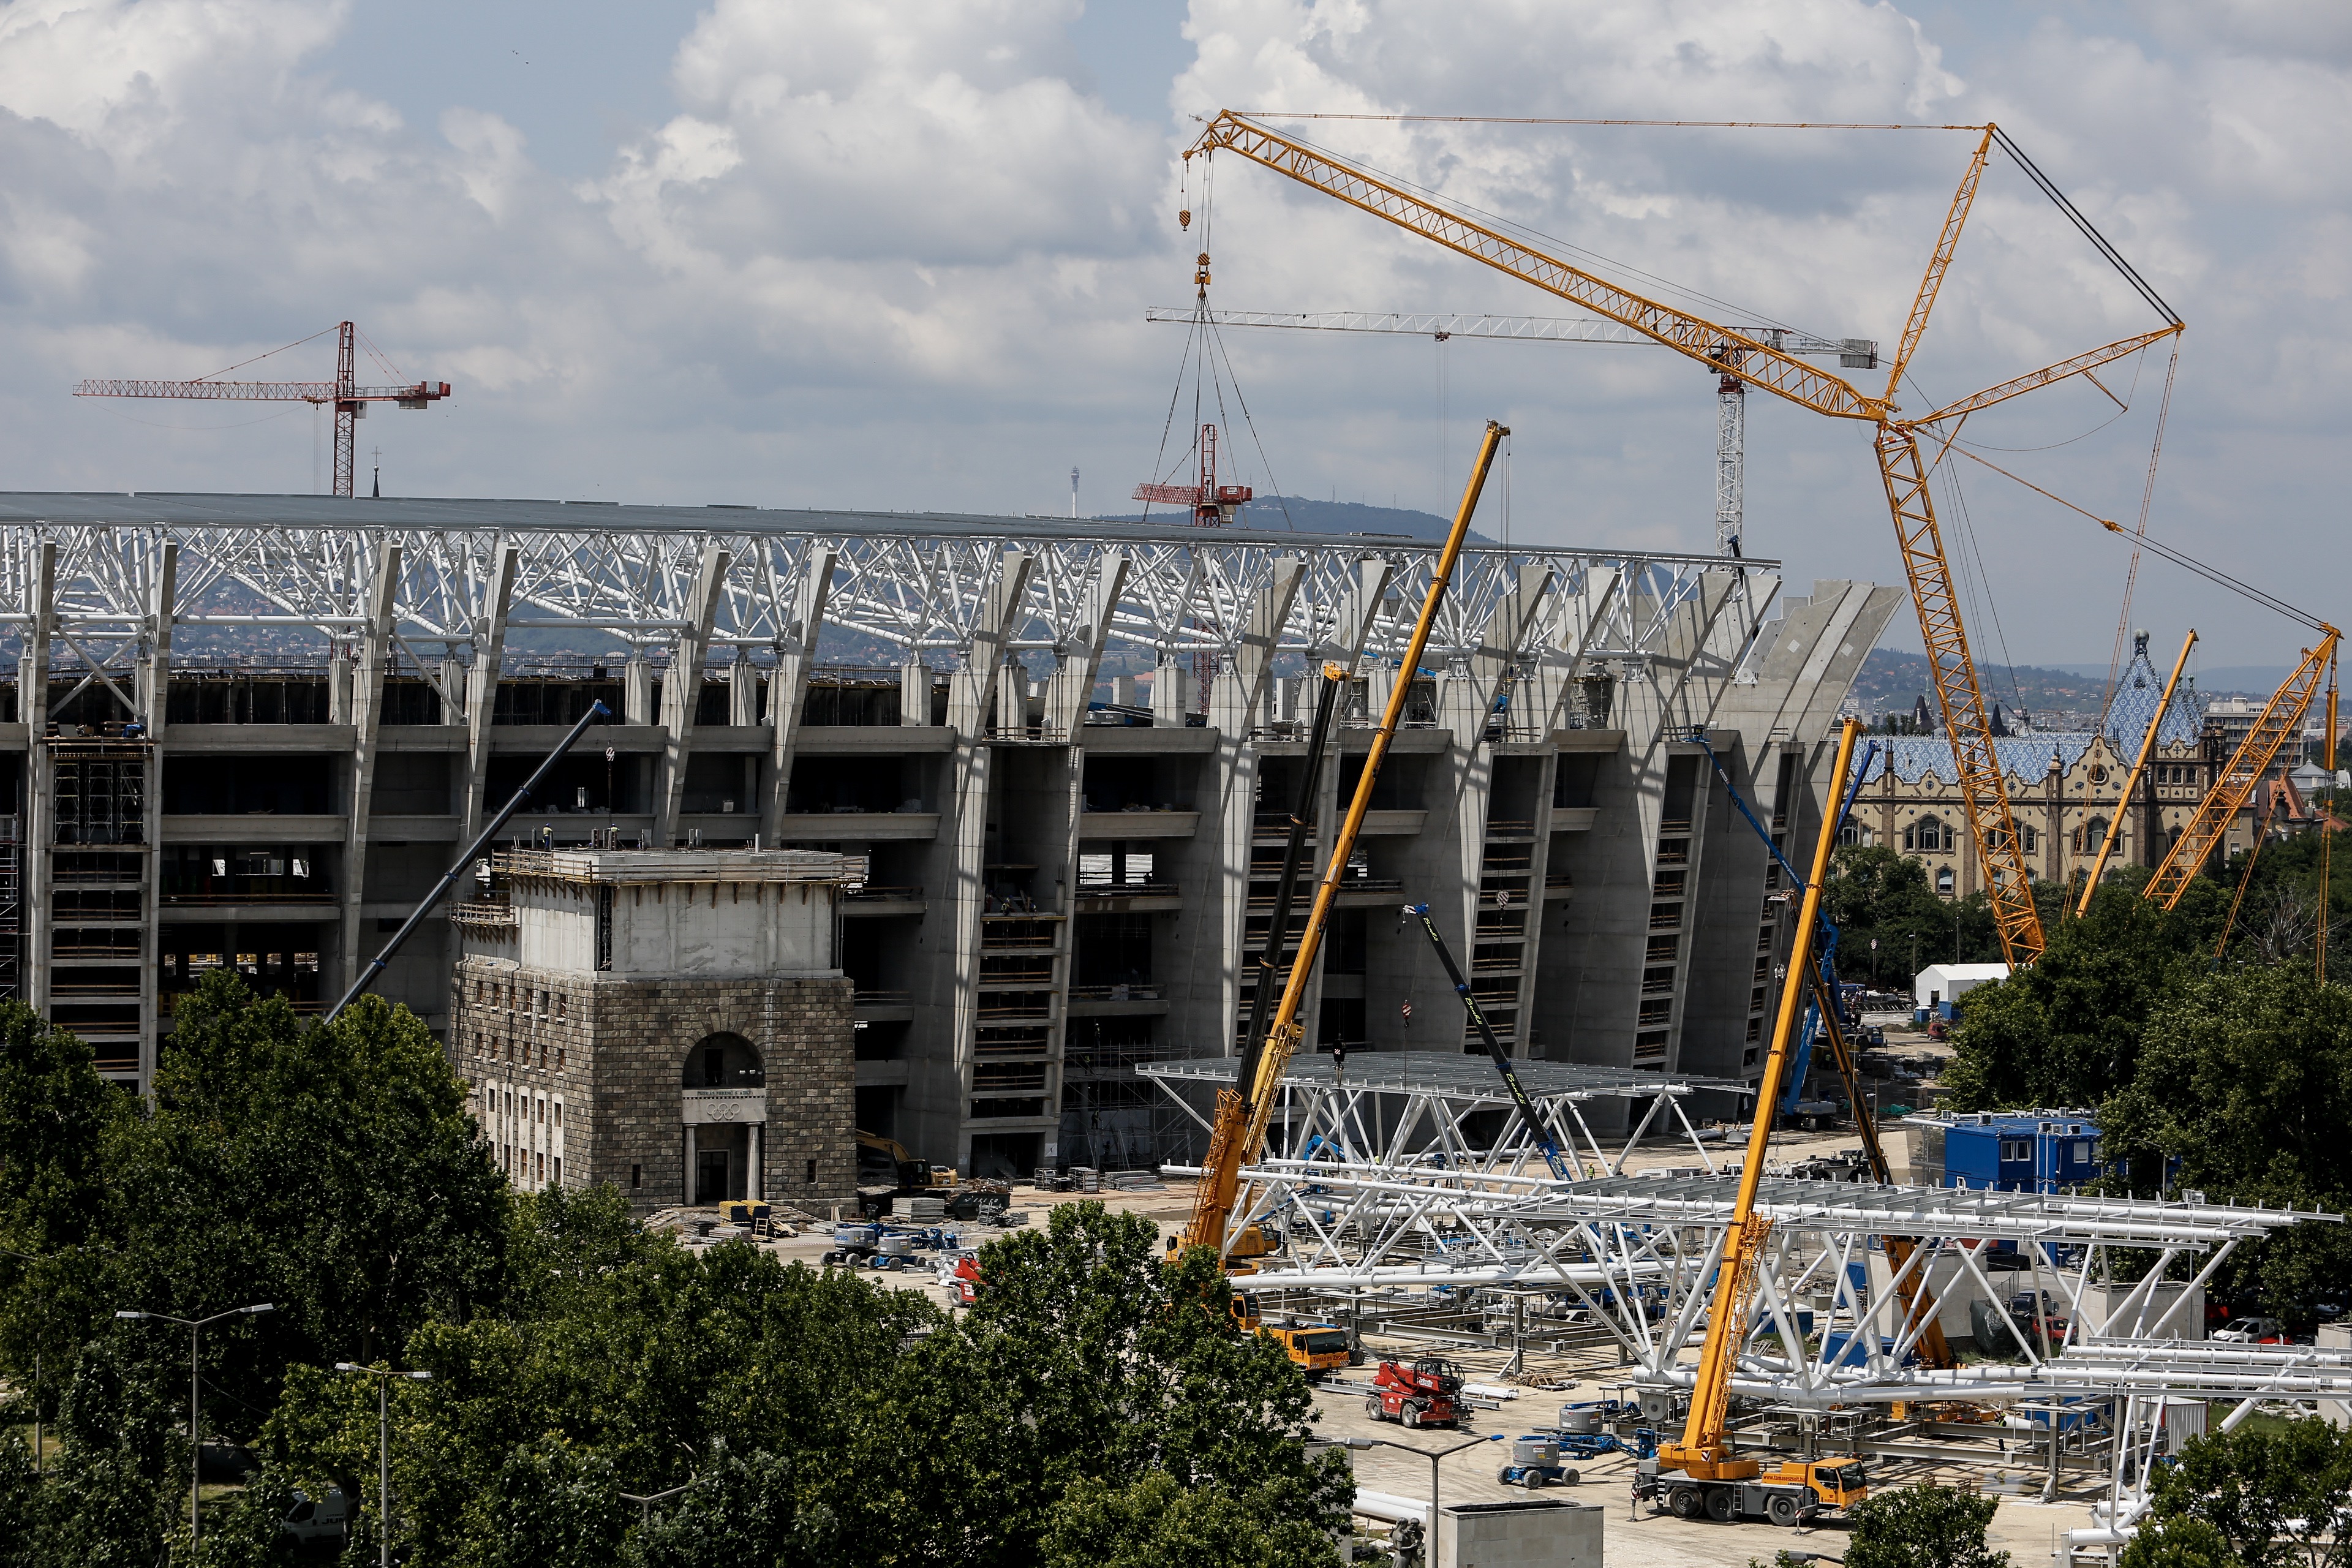 See Budapest’s Ferenc Puskás Stadium take shape for Euro 2020